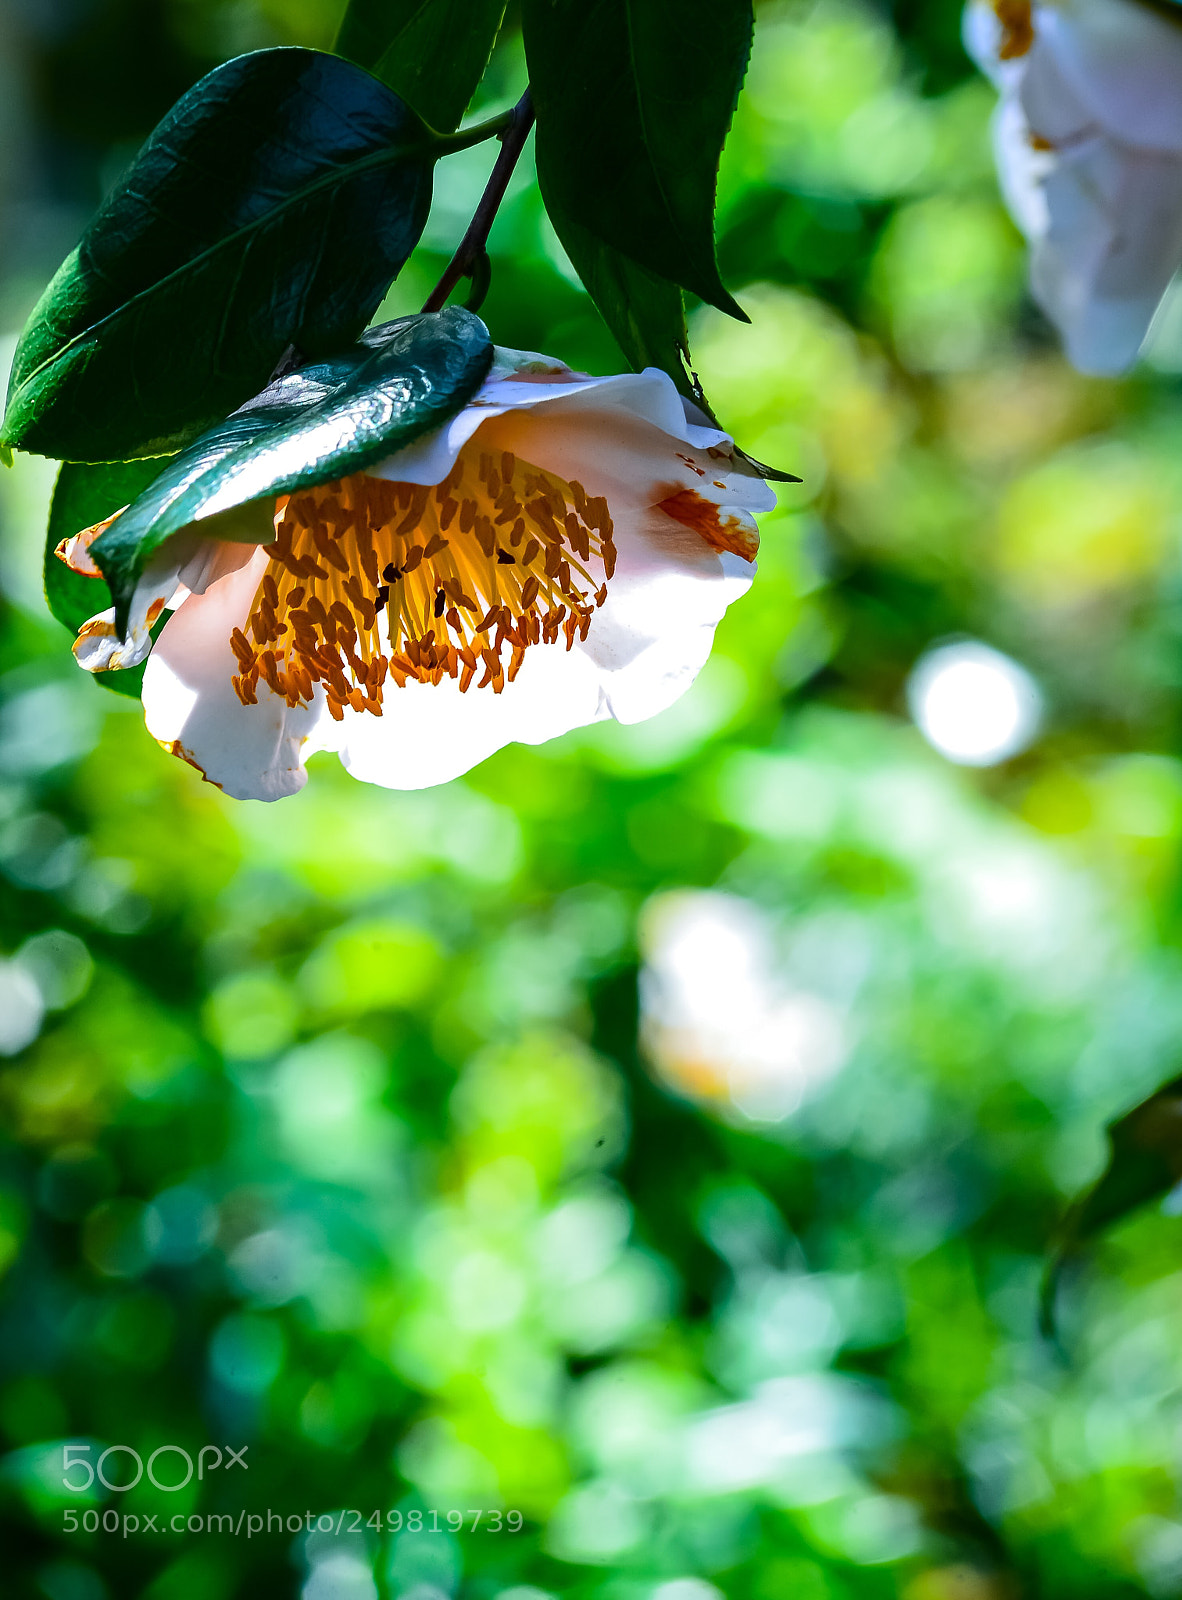 Nikon Df sample photo. The white camellia photography